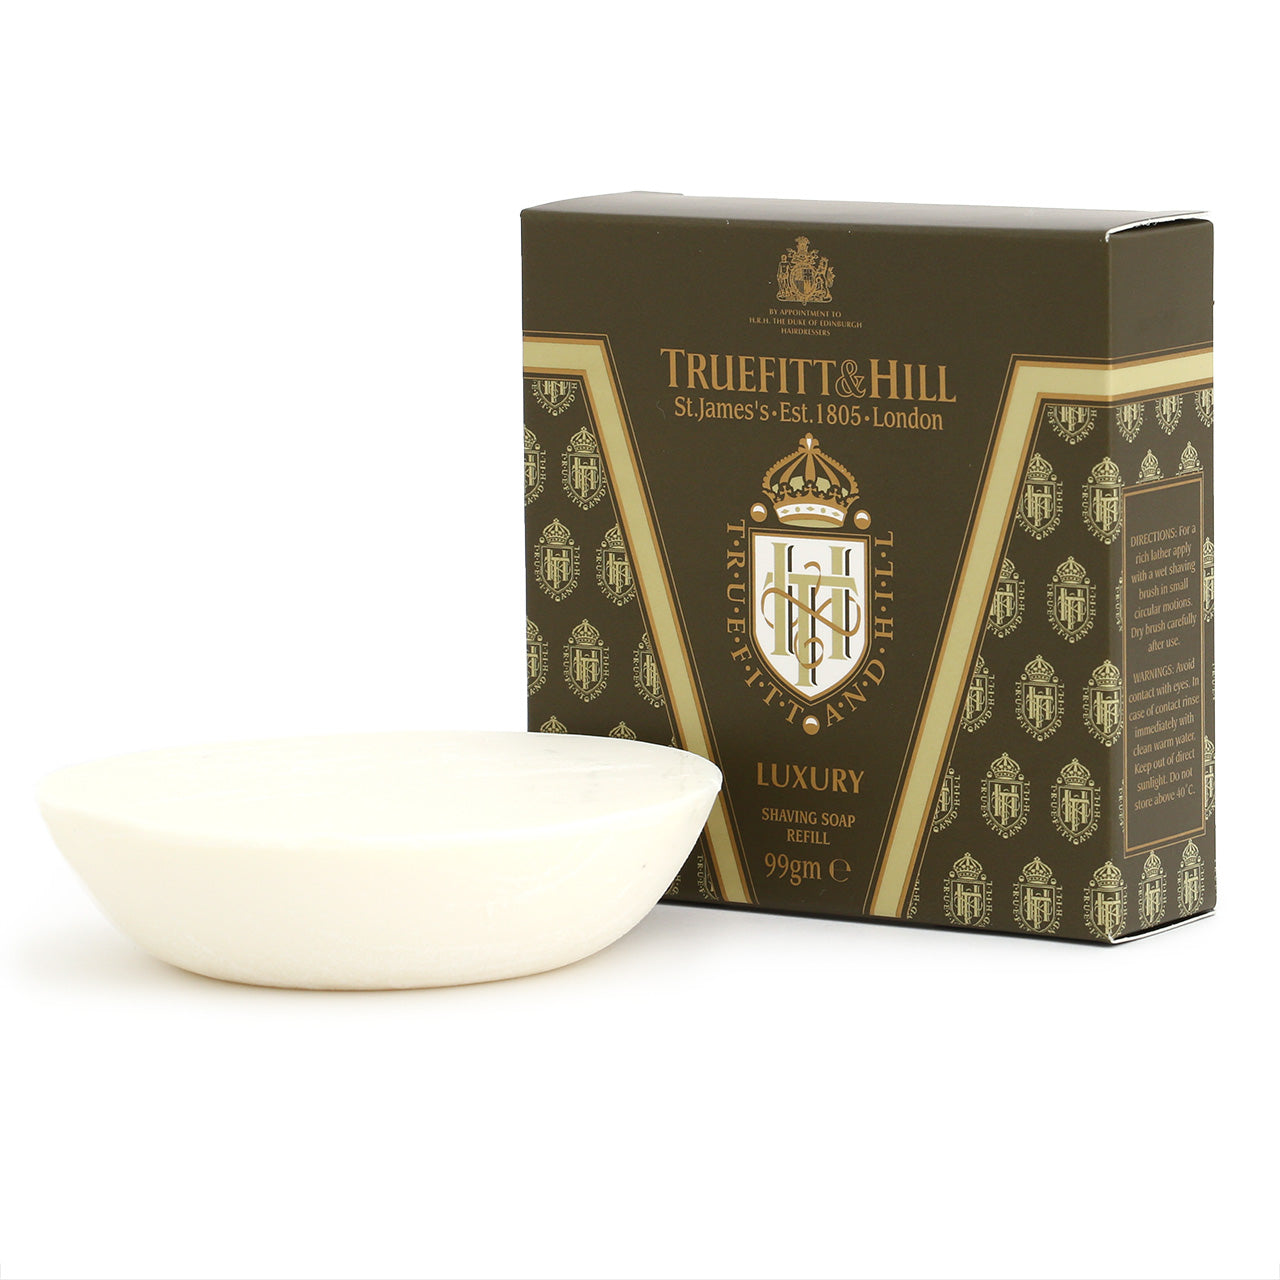 Truefitt & Hill Luxury shaving soap refill for wooden bowl